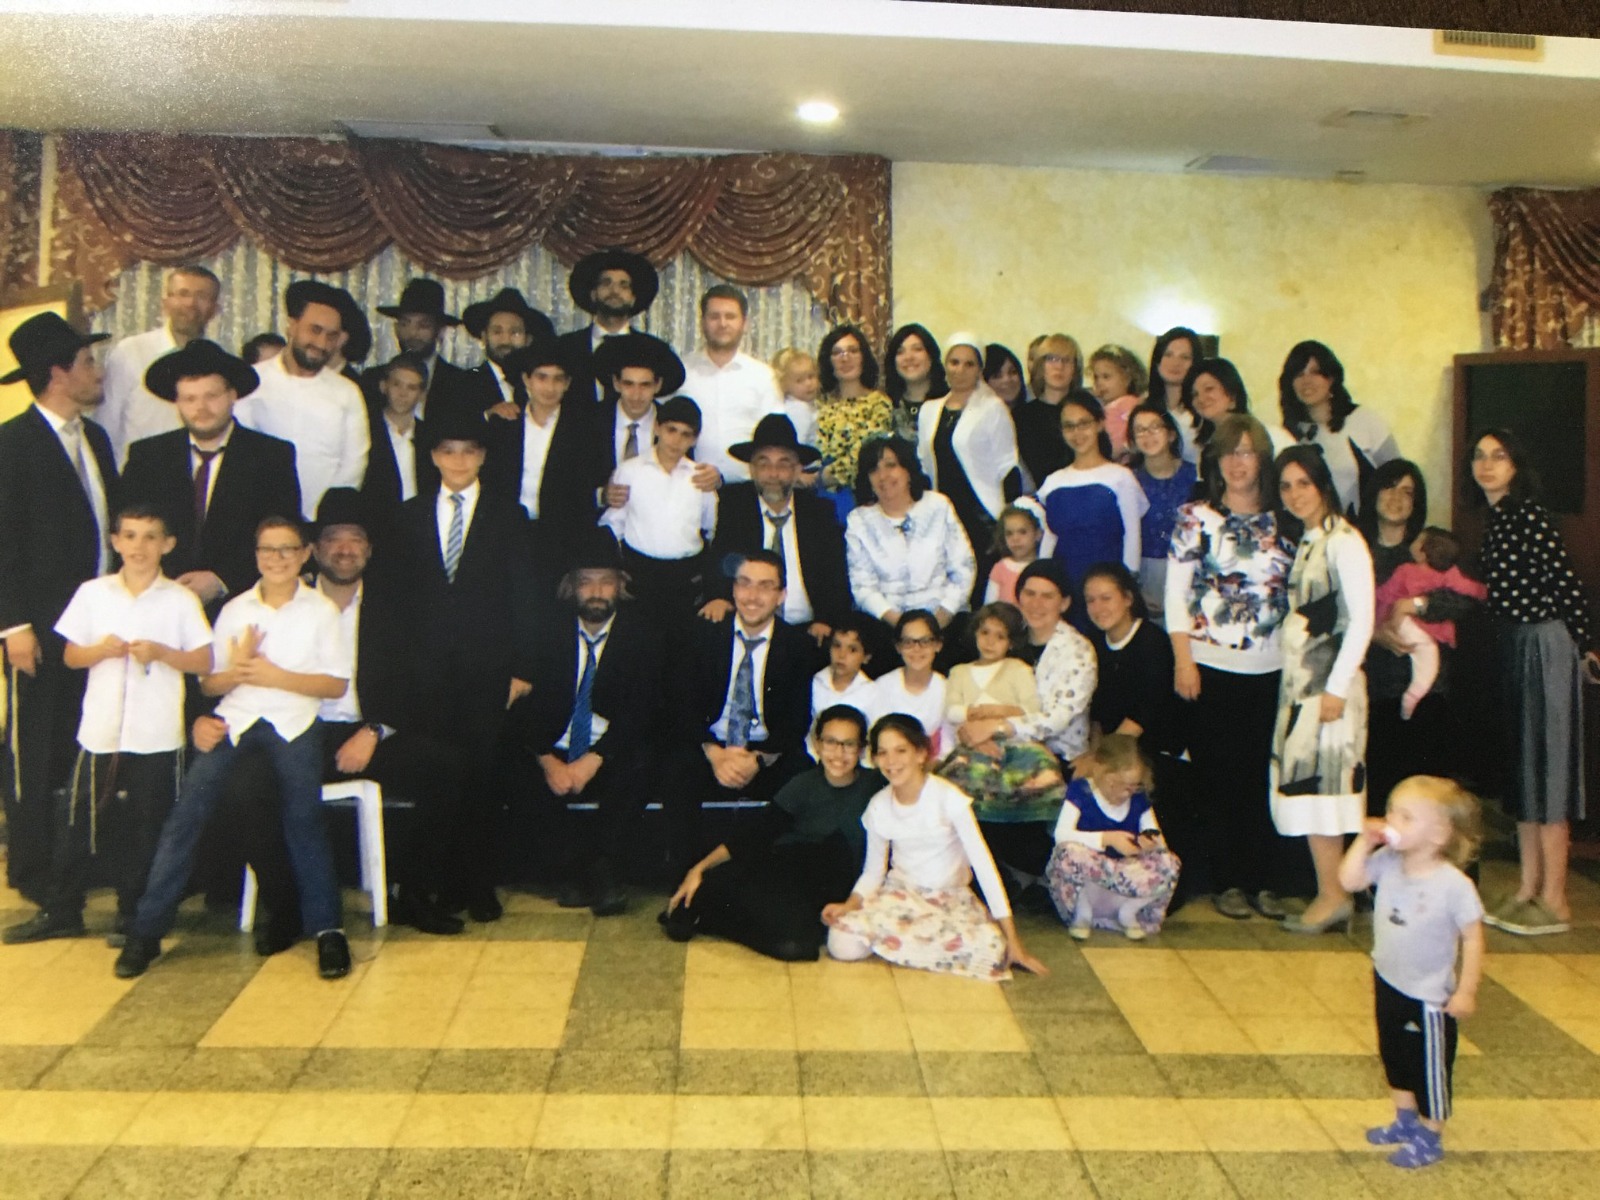 חתונה בה זכתה הרבנית גדלביץ להיות שדכנית